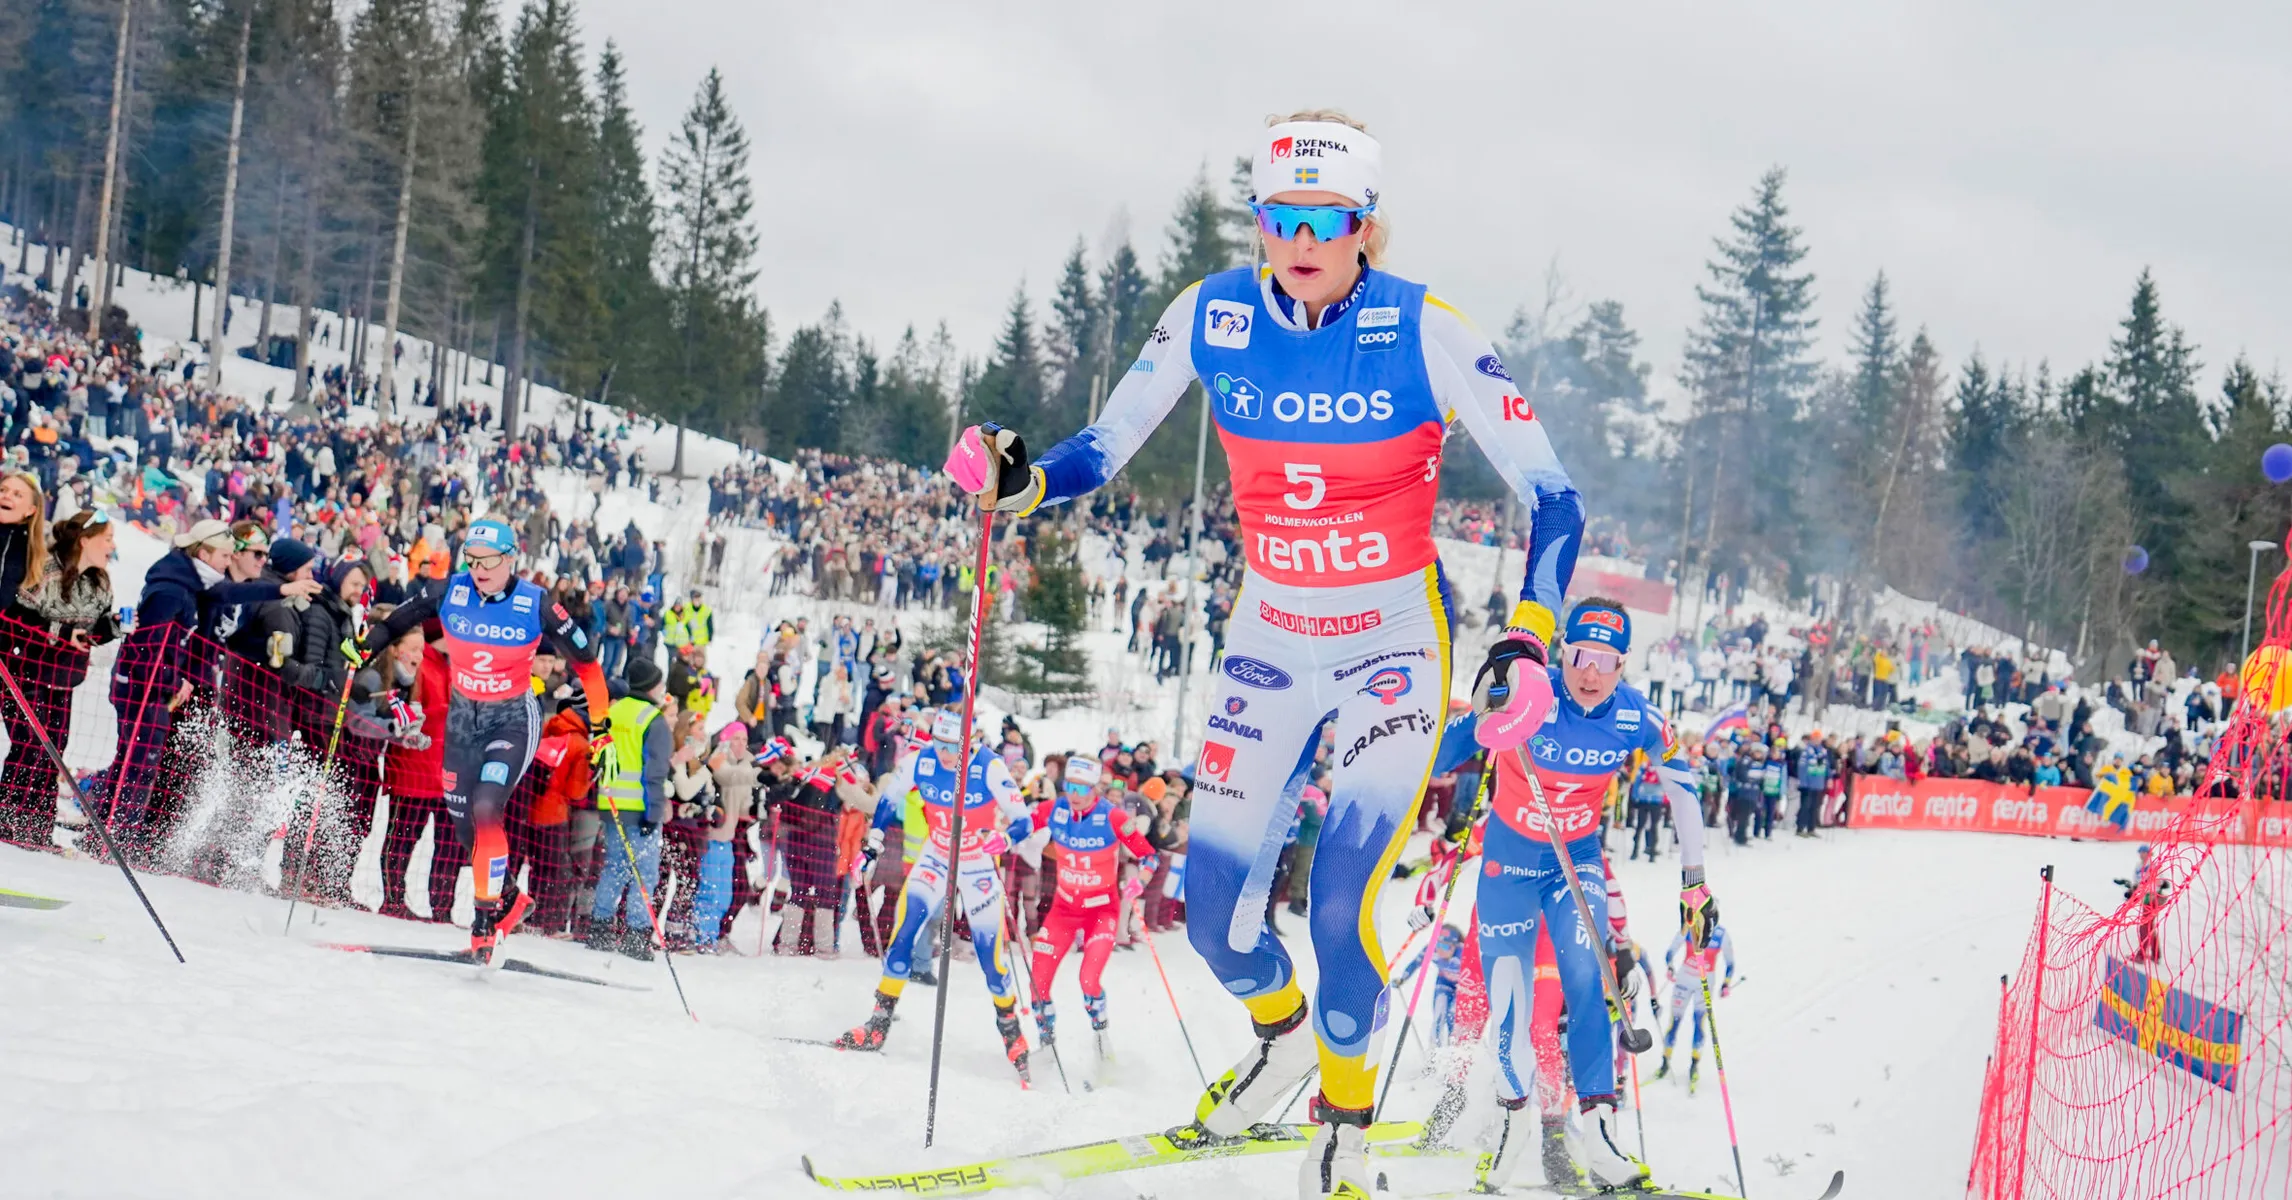 Cross-Country Ski Race Derailed By Drunken Brawl